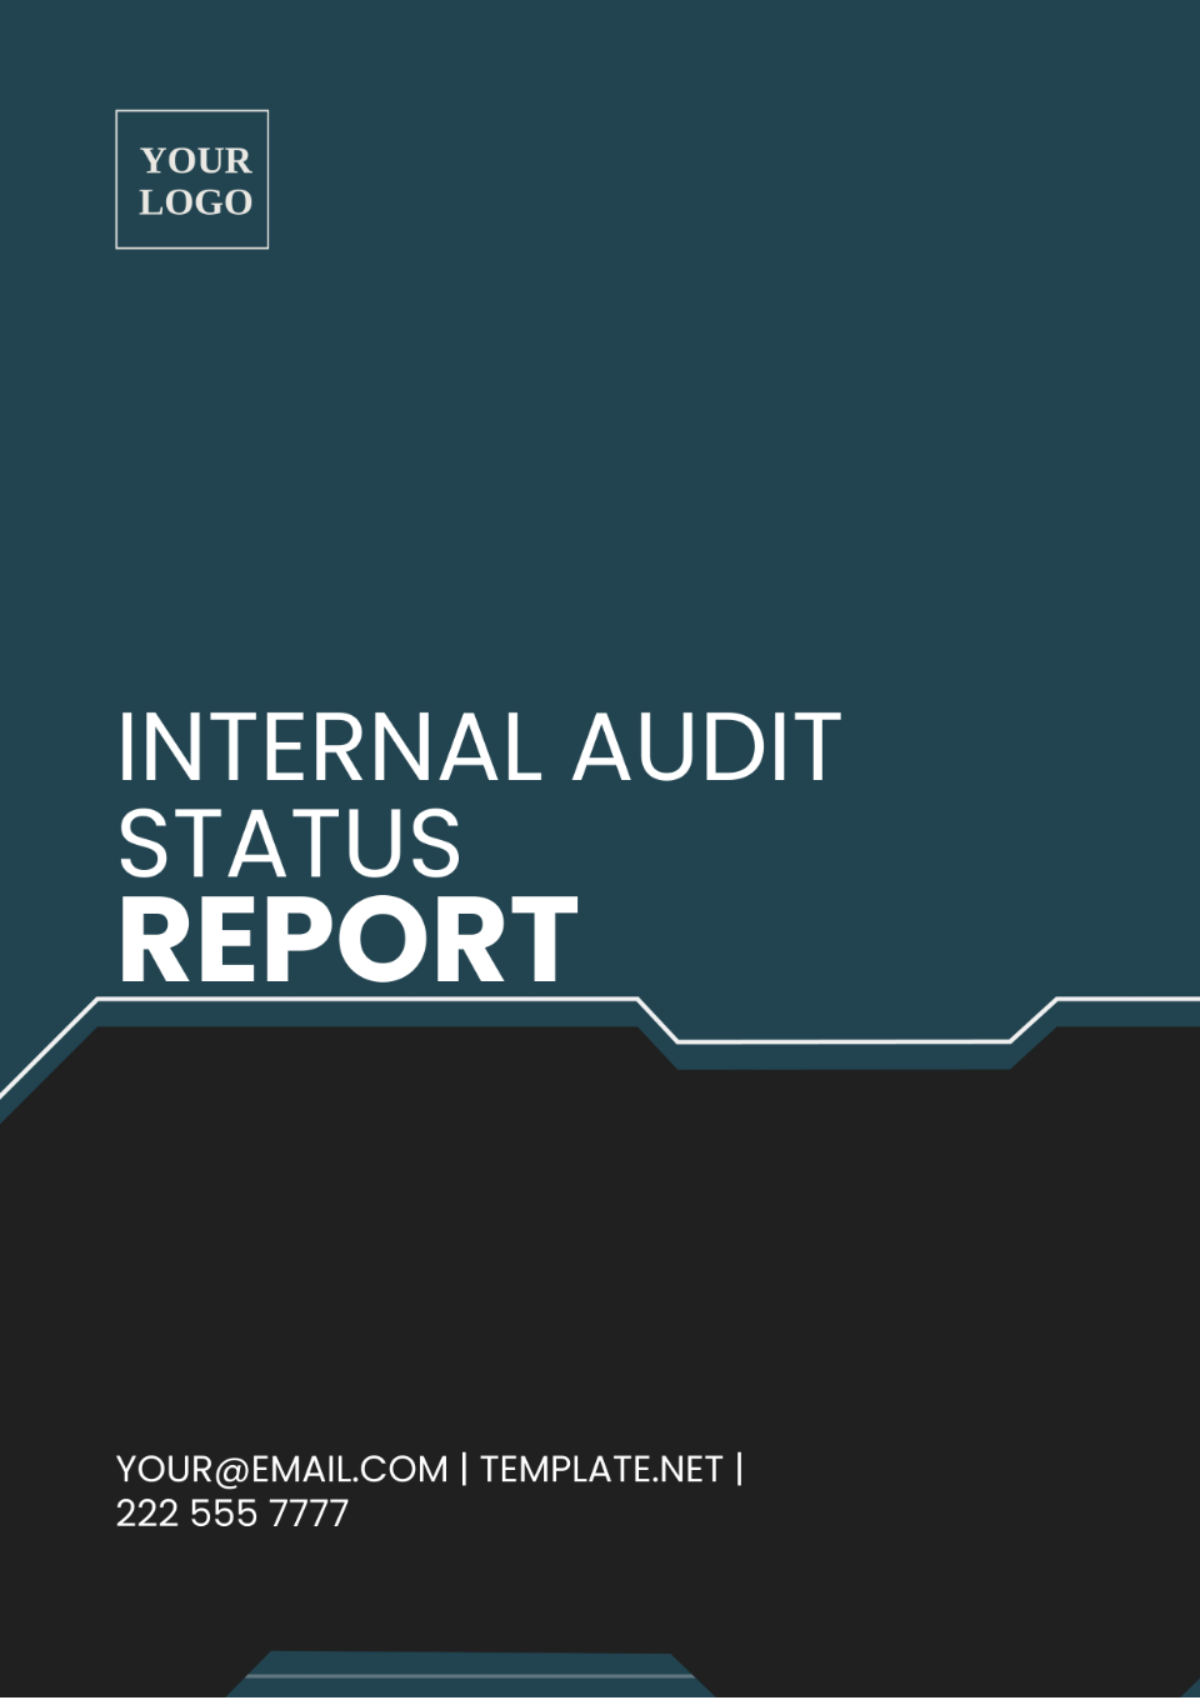 Internal Audit Status Report Template